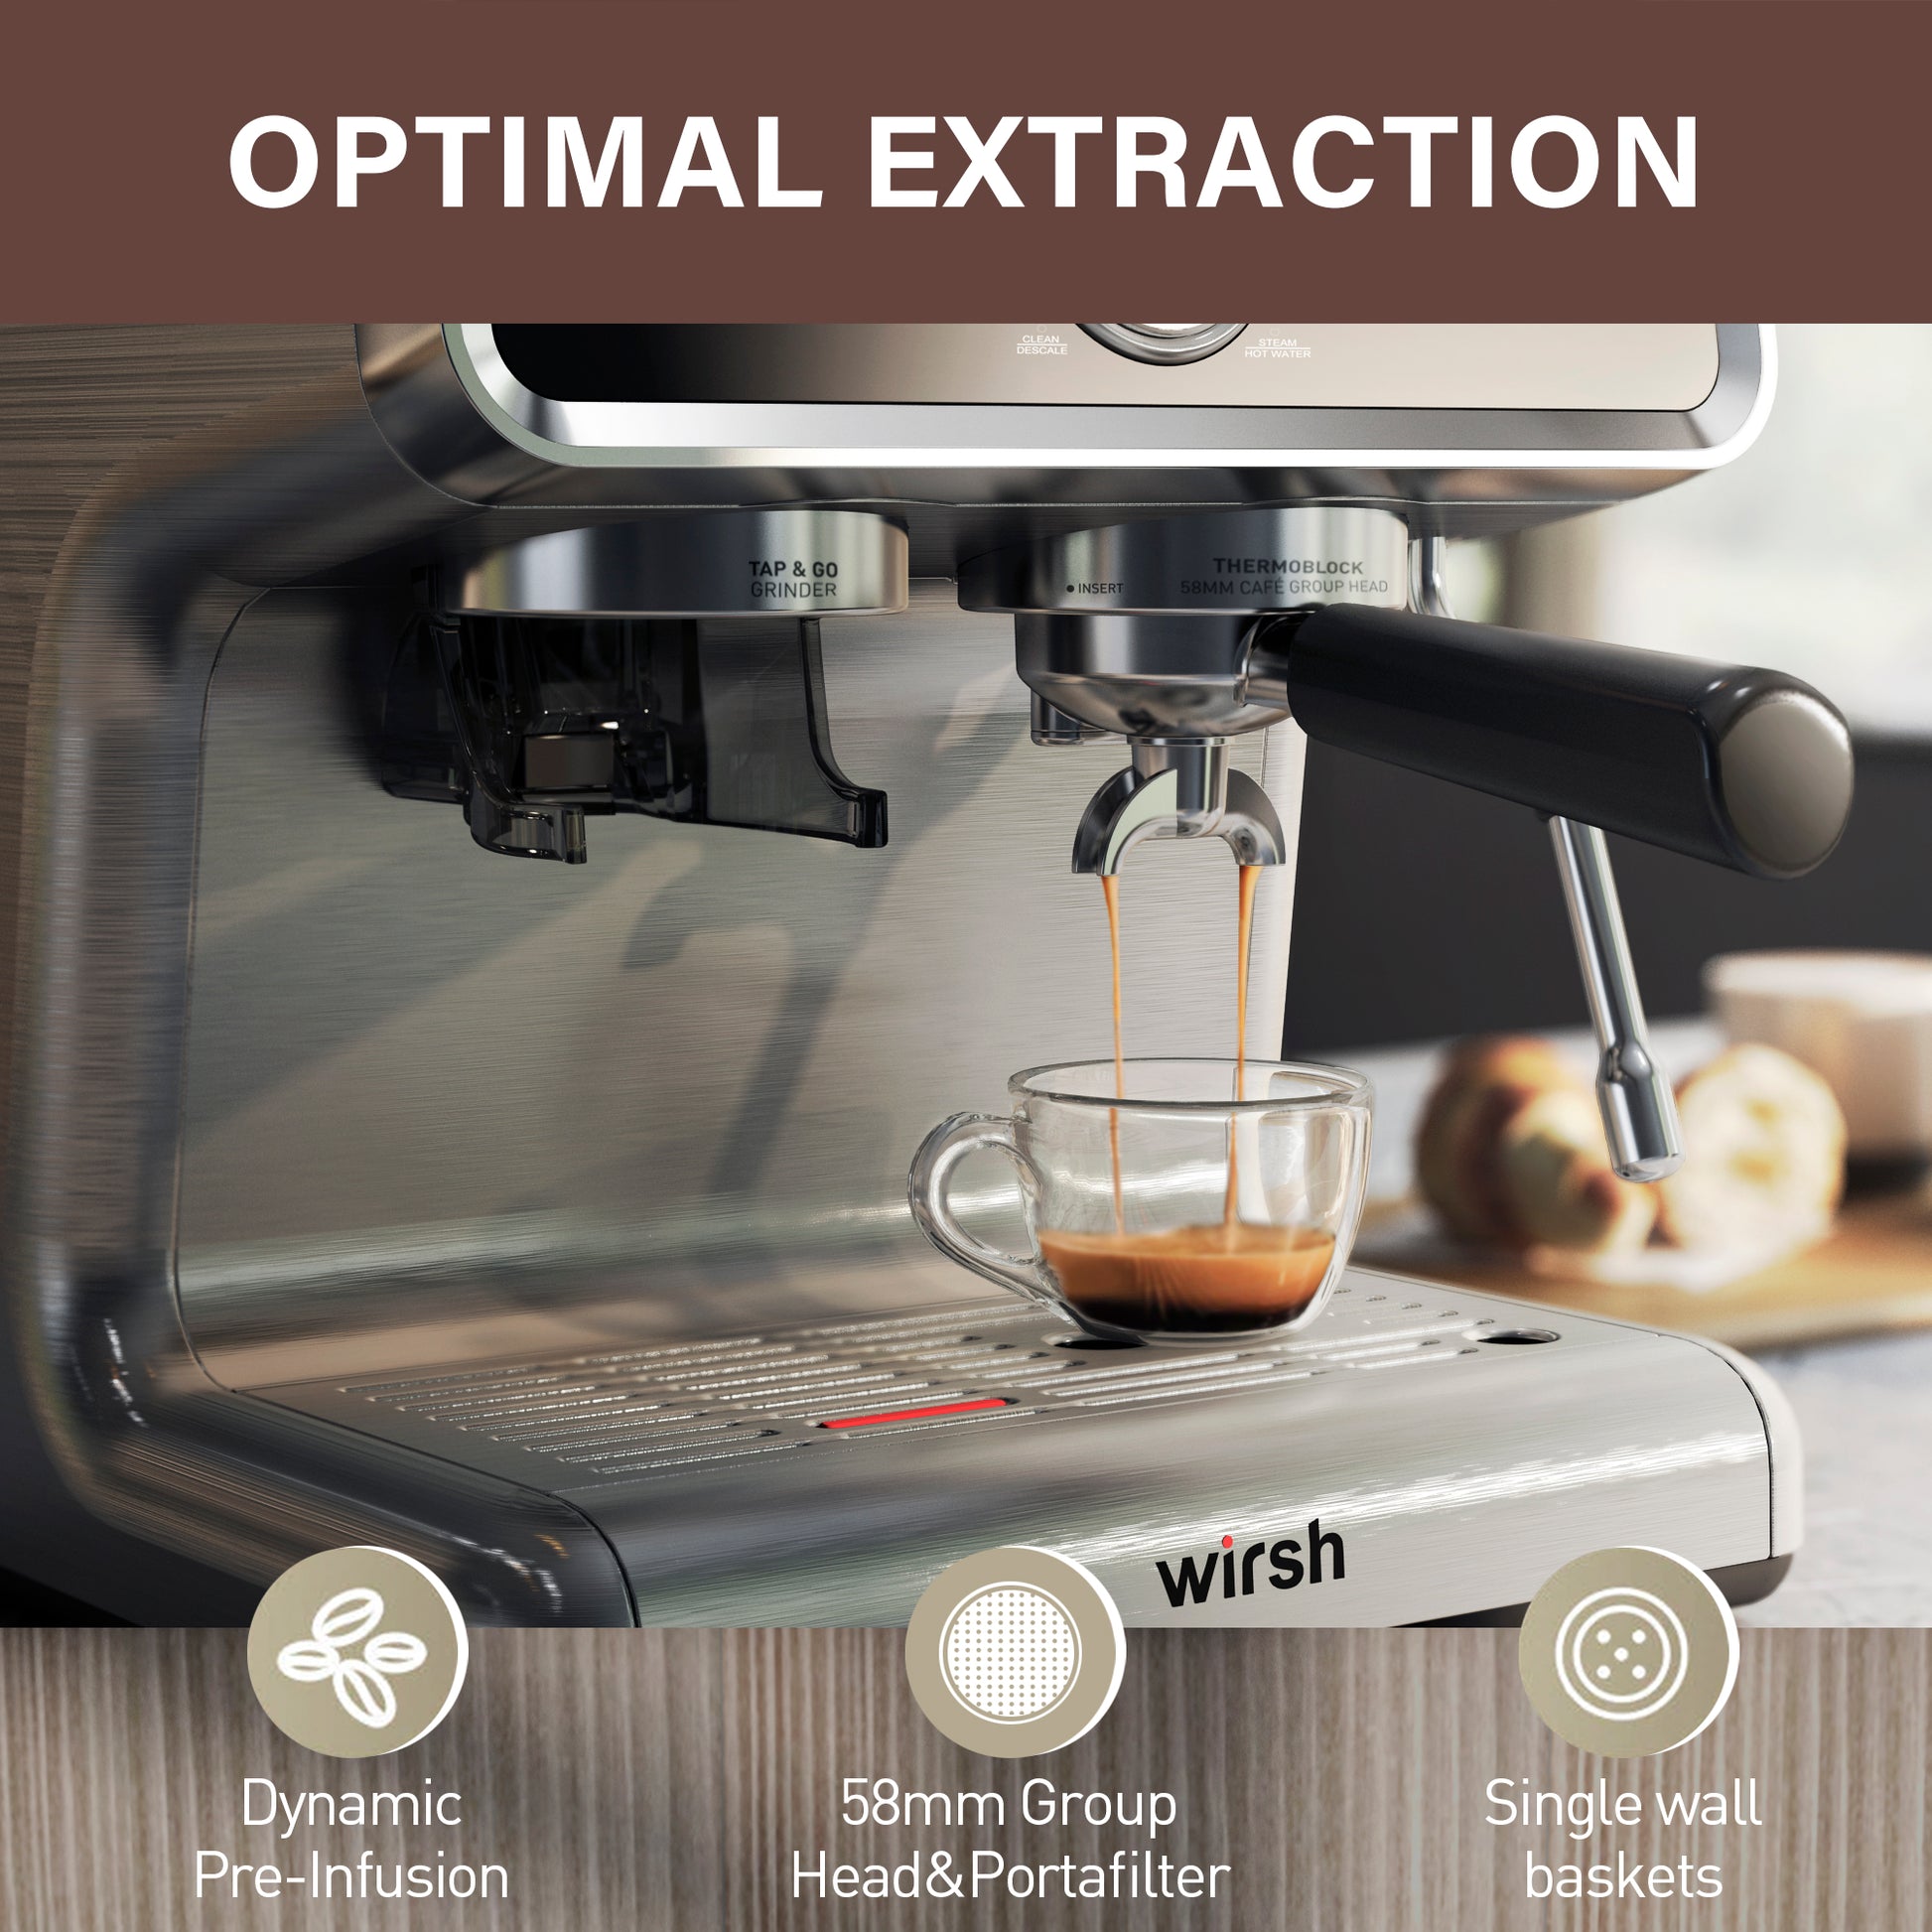 <img src="espresso machine.jpg" alt="wirsh espresso machine features"/>